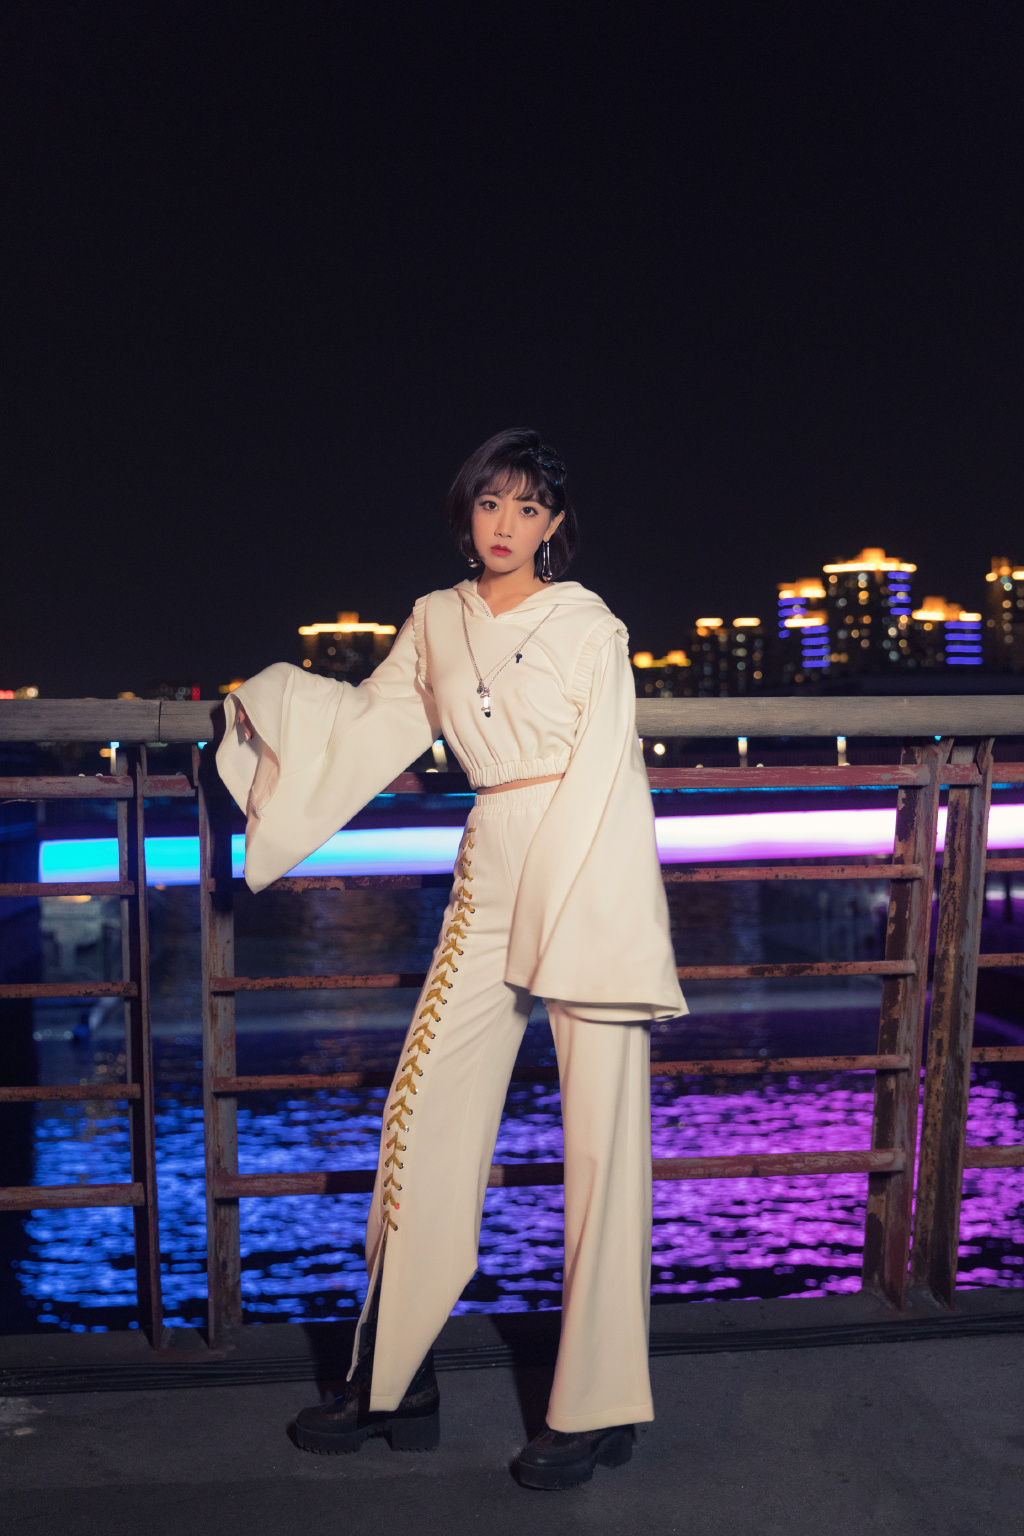 李艺彤时尚个性白衣套装着身夜晚江边护栏前写真美照